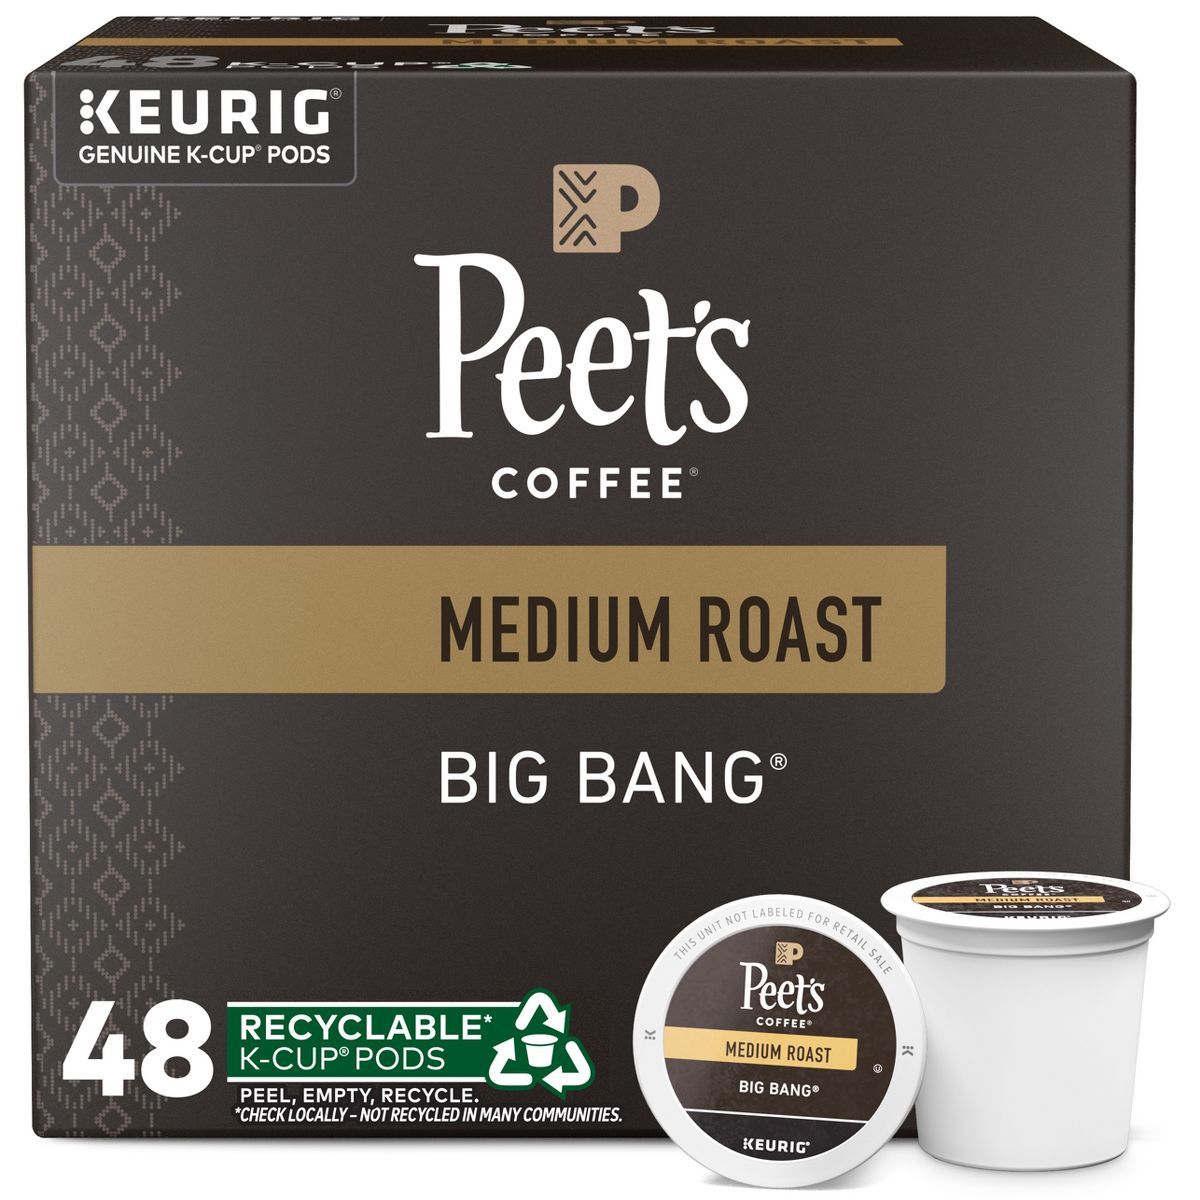 Peet's Big Bang Medium Roast Coffee - Keurig K-Cup Pods | Target